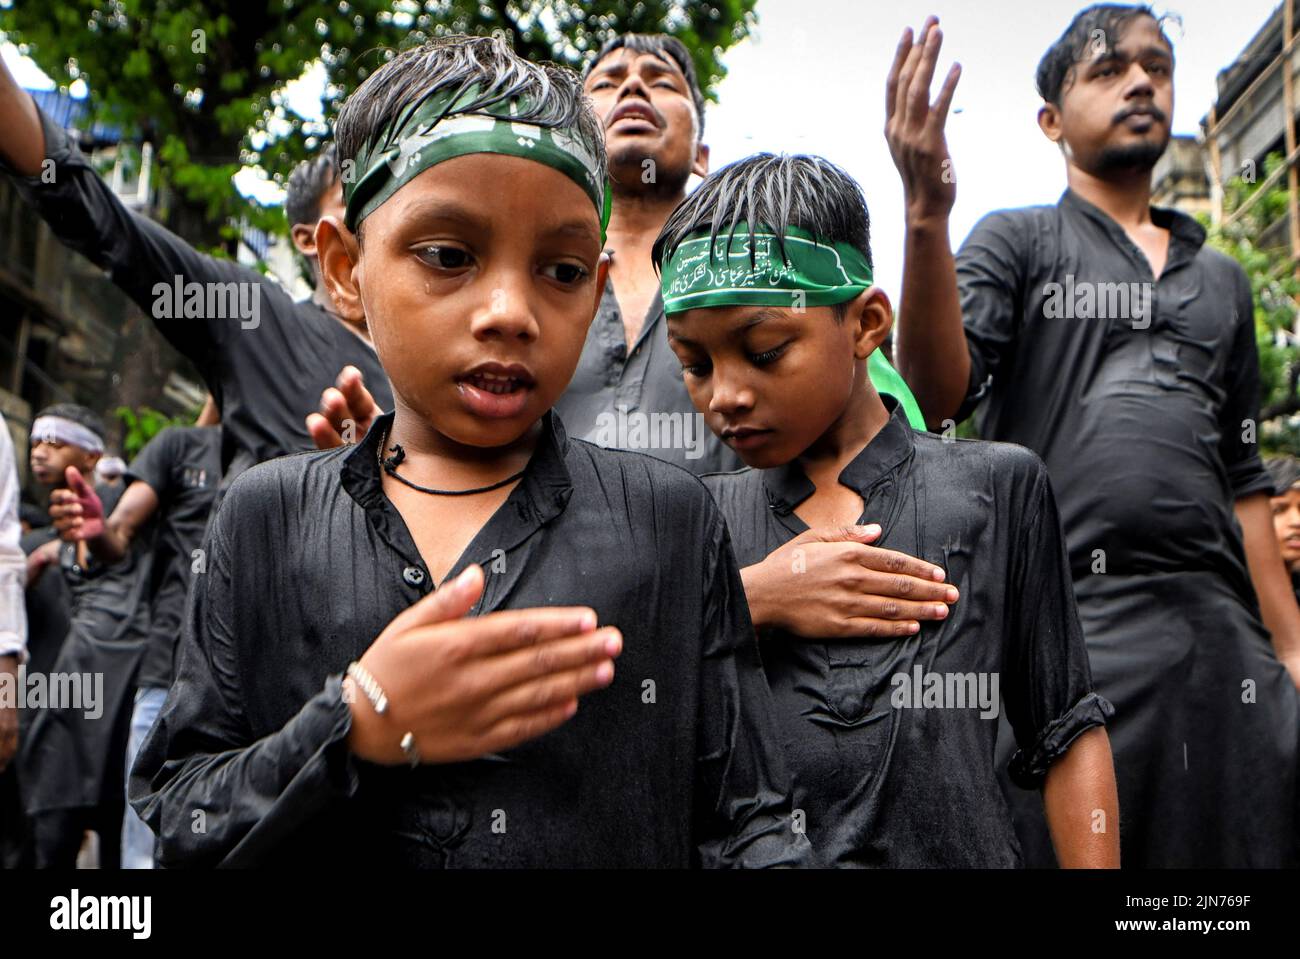 Los niños musulmanes chiítas golpearon sus pechos durante la procesión de Muharram en Kolkata. Muharram es el primer mes del calendario islámico y Ashura es el décimo día del mes de Muharram en el que se celebra la conmemoración del martirio del imán Hussain, nieto del profeta Mahoma (PBUH), durante la batalla de Karbala. Es parte del duelo por los musulmanes chiítas y un día de ayuno para los musulmanes sunitas que se observa en todo el mundo. Foto de stock